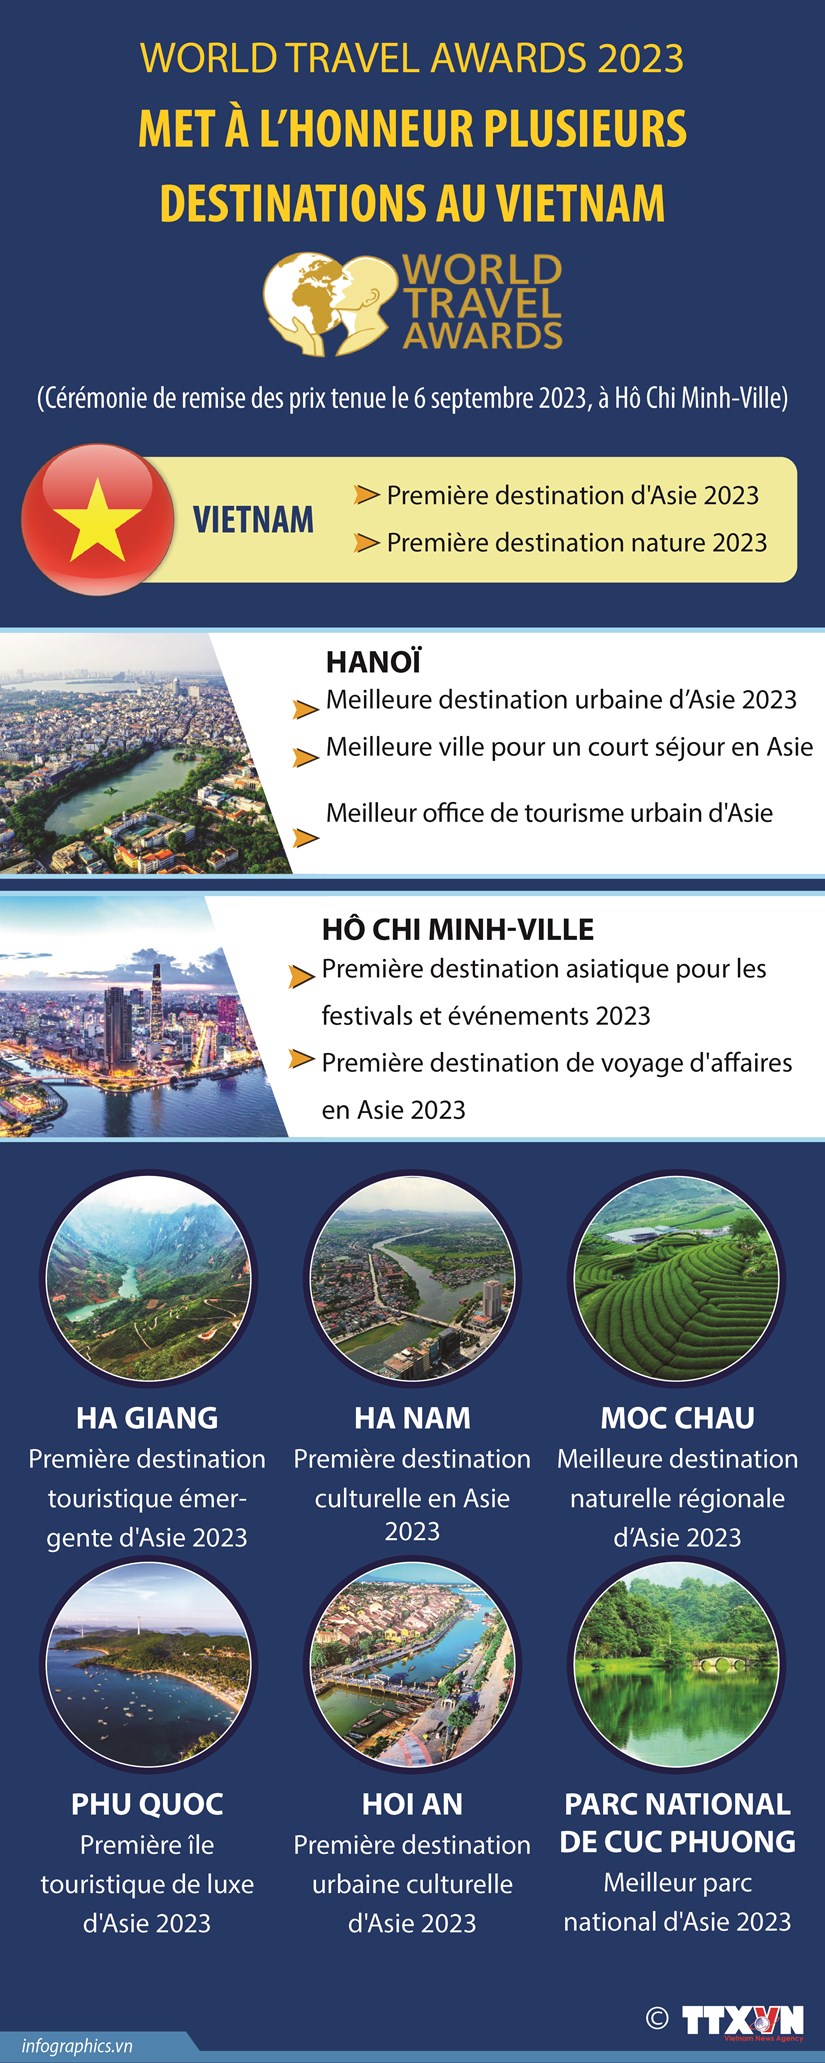 World Travel Awards 2023 met a l'honneur plusieurs destinations au Vietnam hinh anh 1